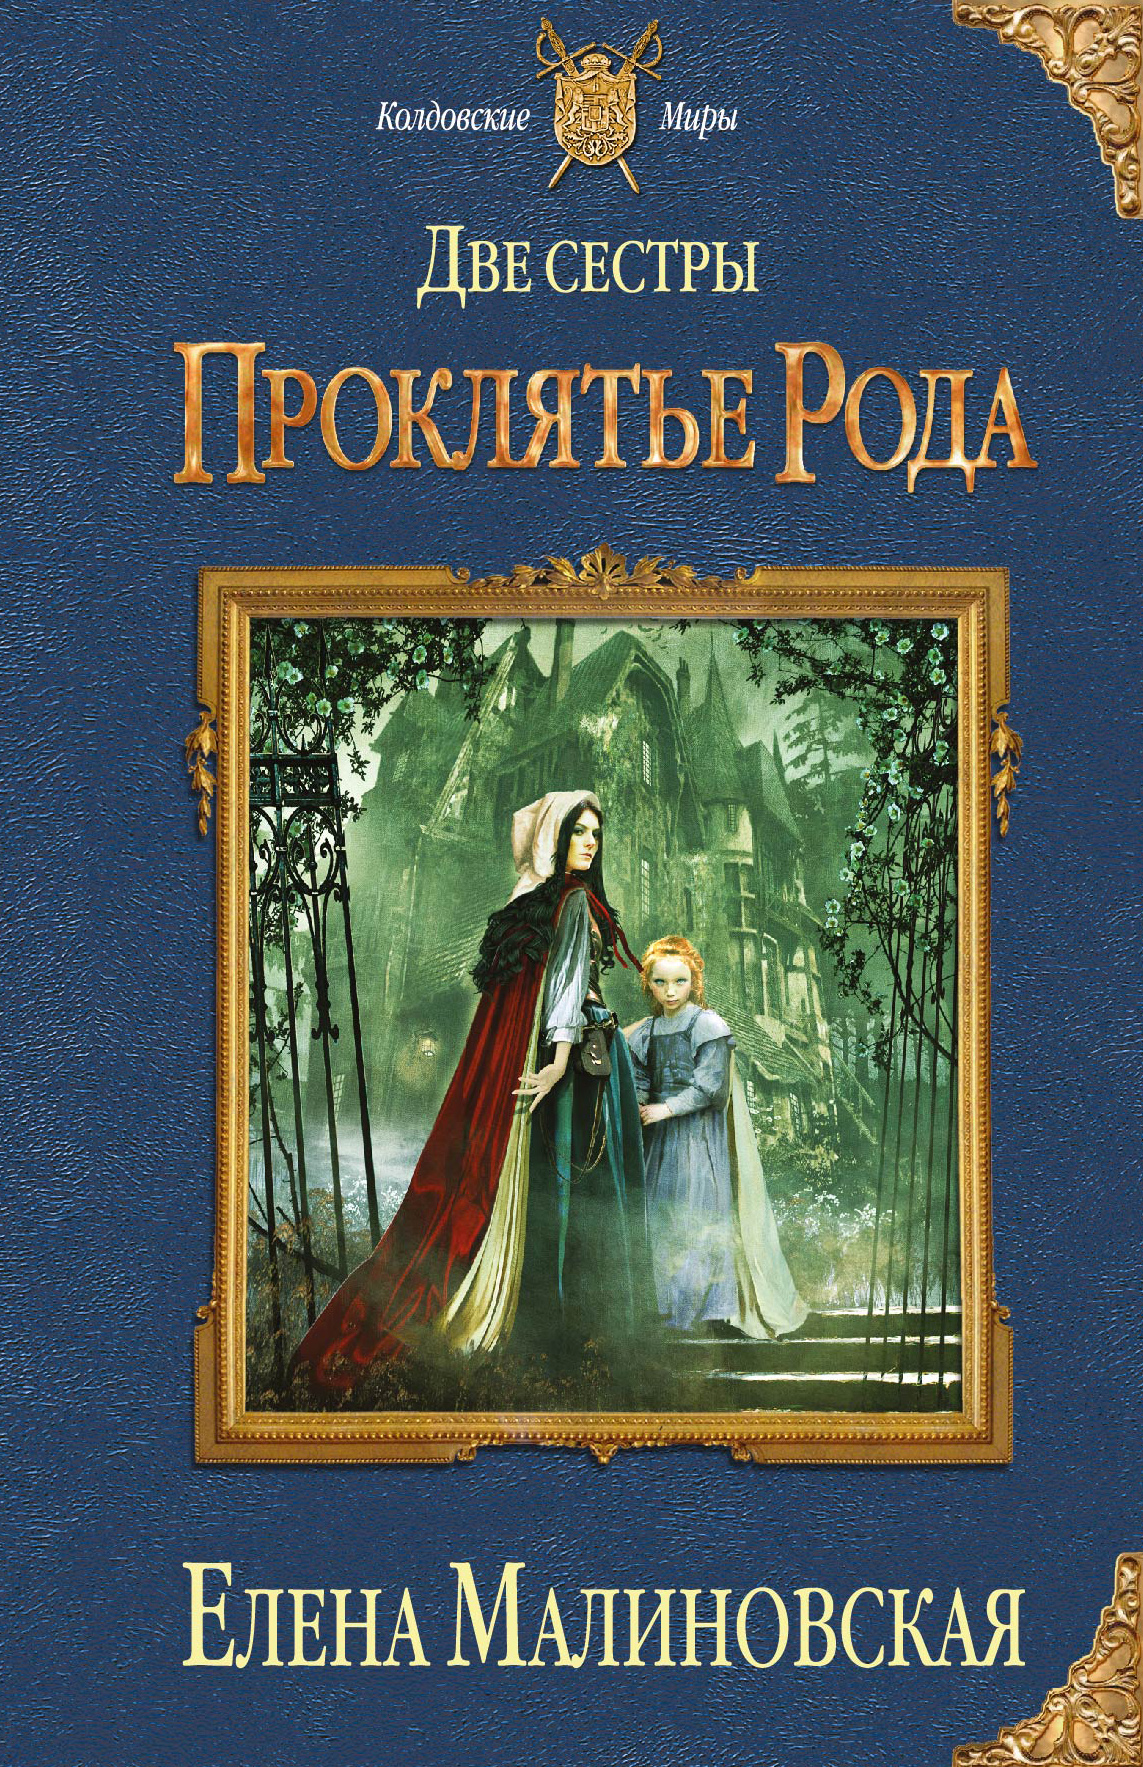 Читать книгу сестренки. Две сестры книга. Колдовские миры книги. Две сестры проклятье рода. Проклятый род книга.